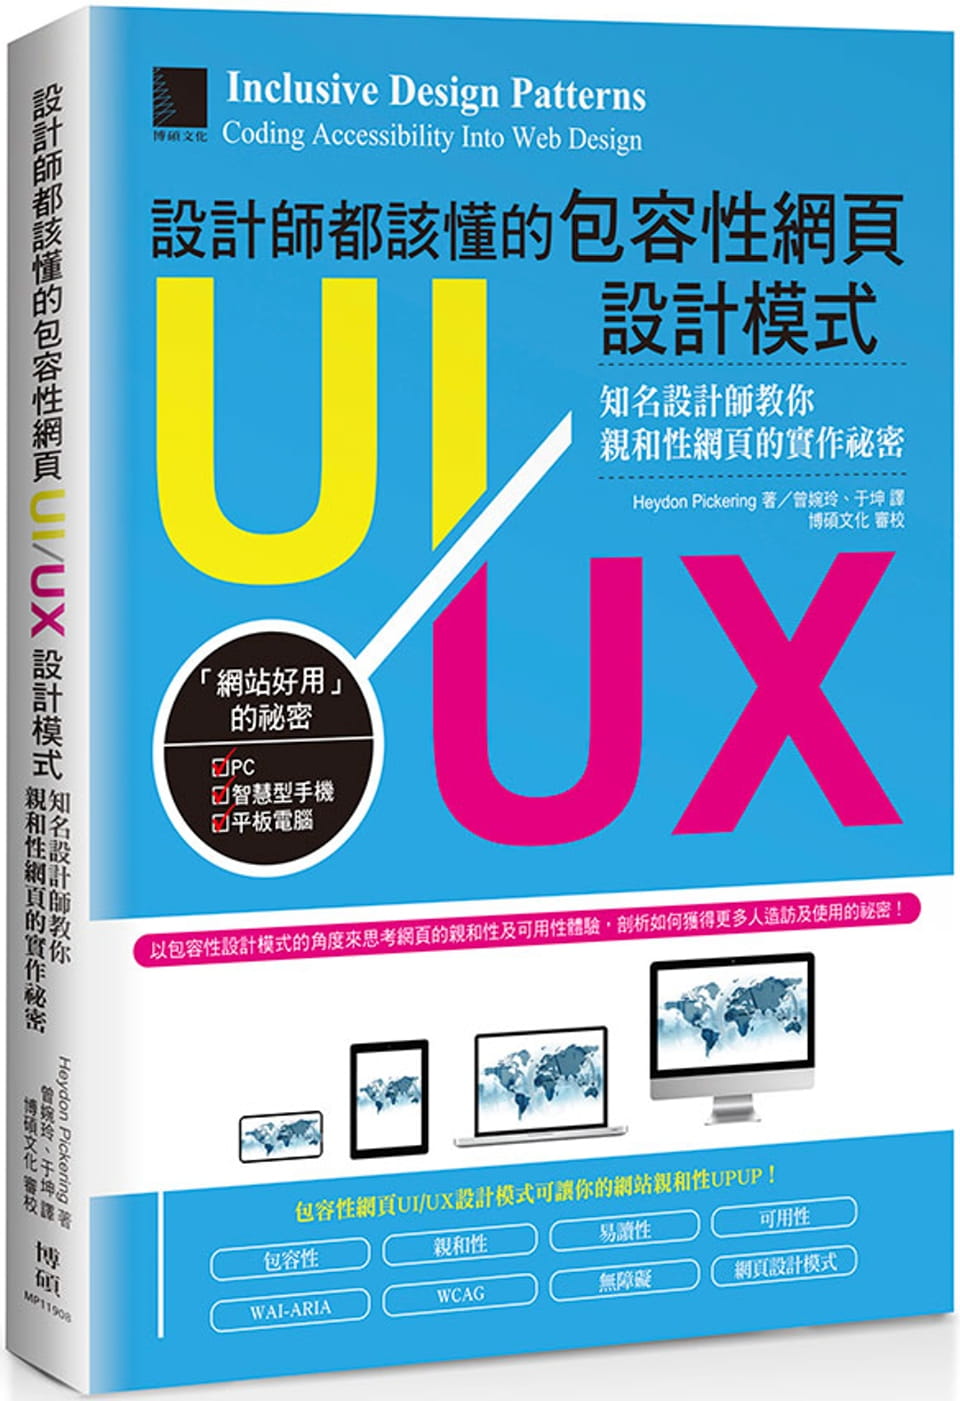 設計師都該懂的包容性網頁UI/UX設計模式：知名設計師教你親和性網頁的實作祕密